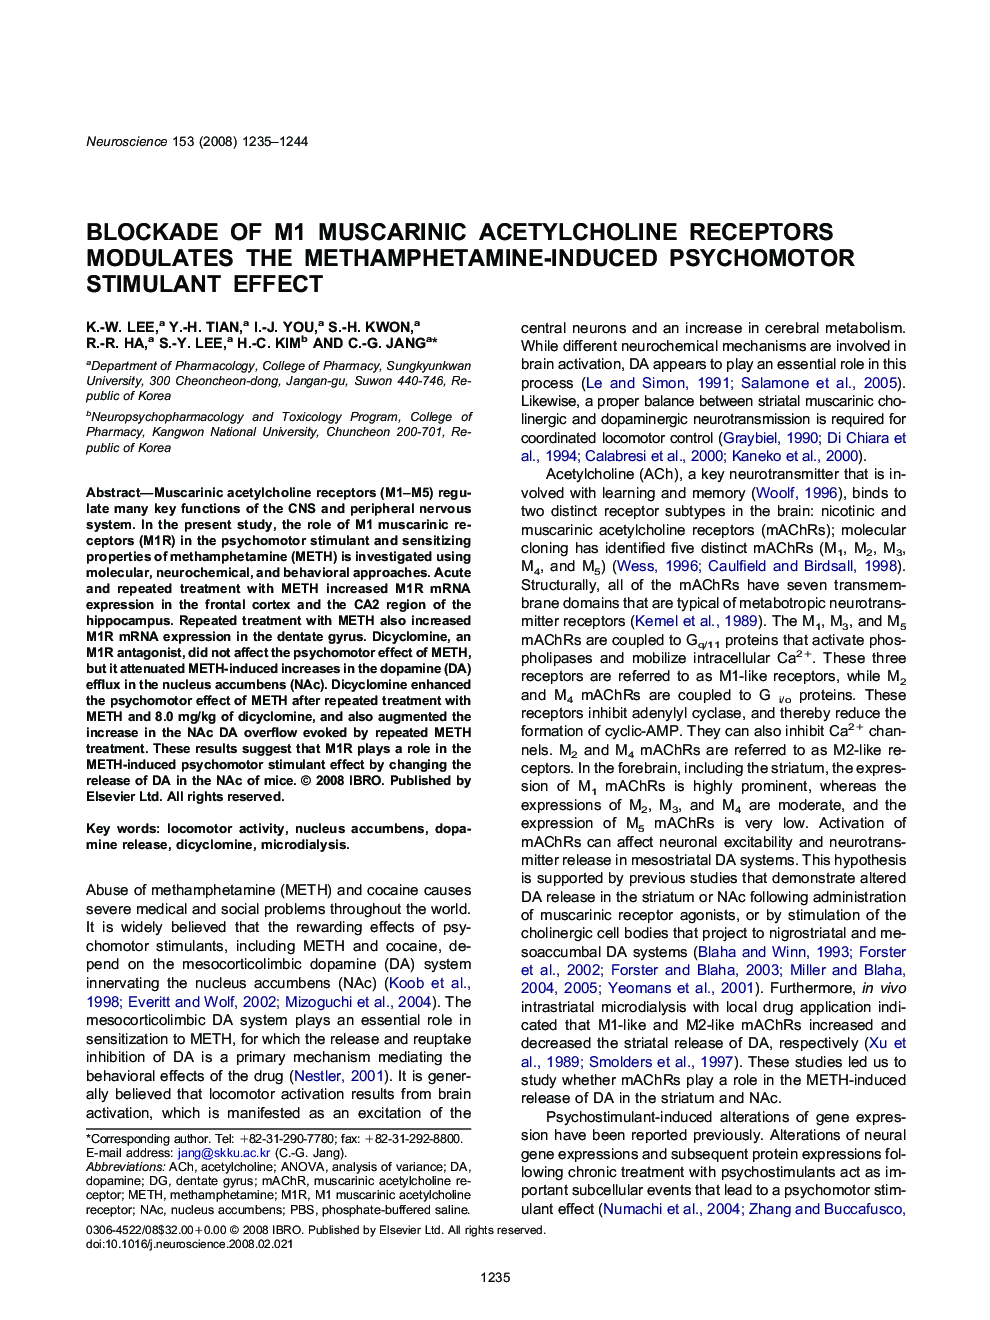 Blockade of M1 muscarinic acetylcholine receptors modulates the methamphetamine-induced psychomotor stimulant effect